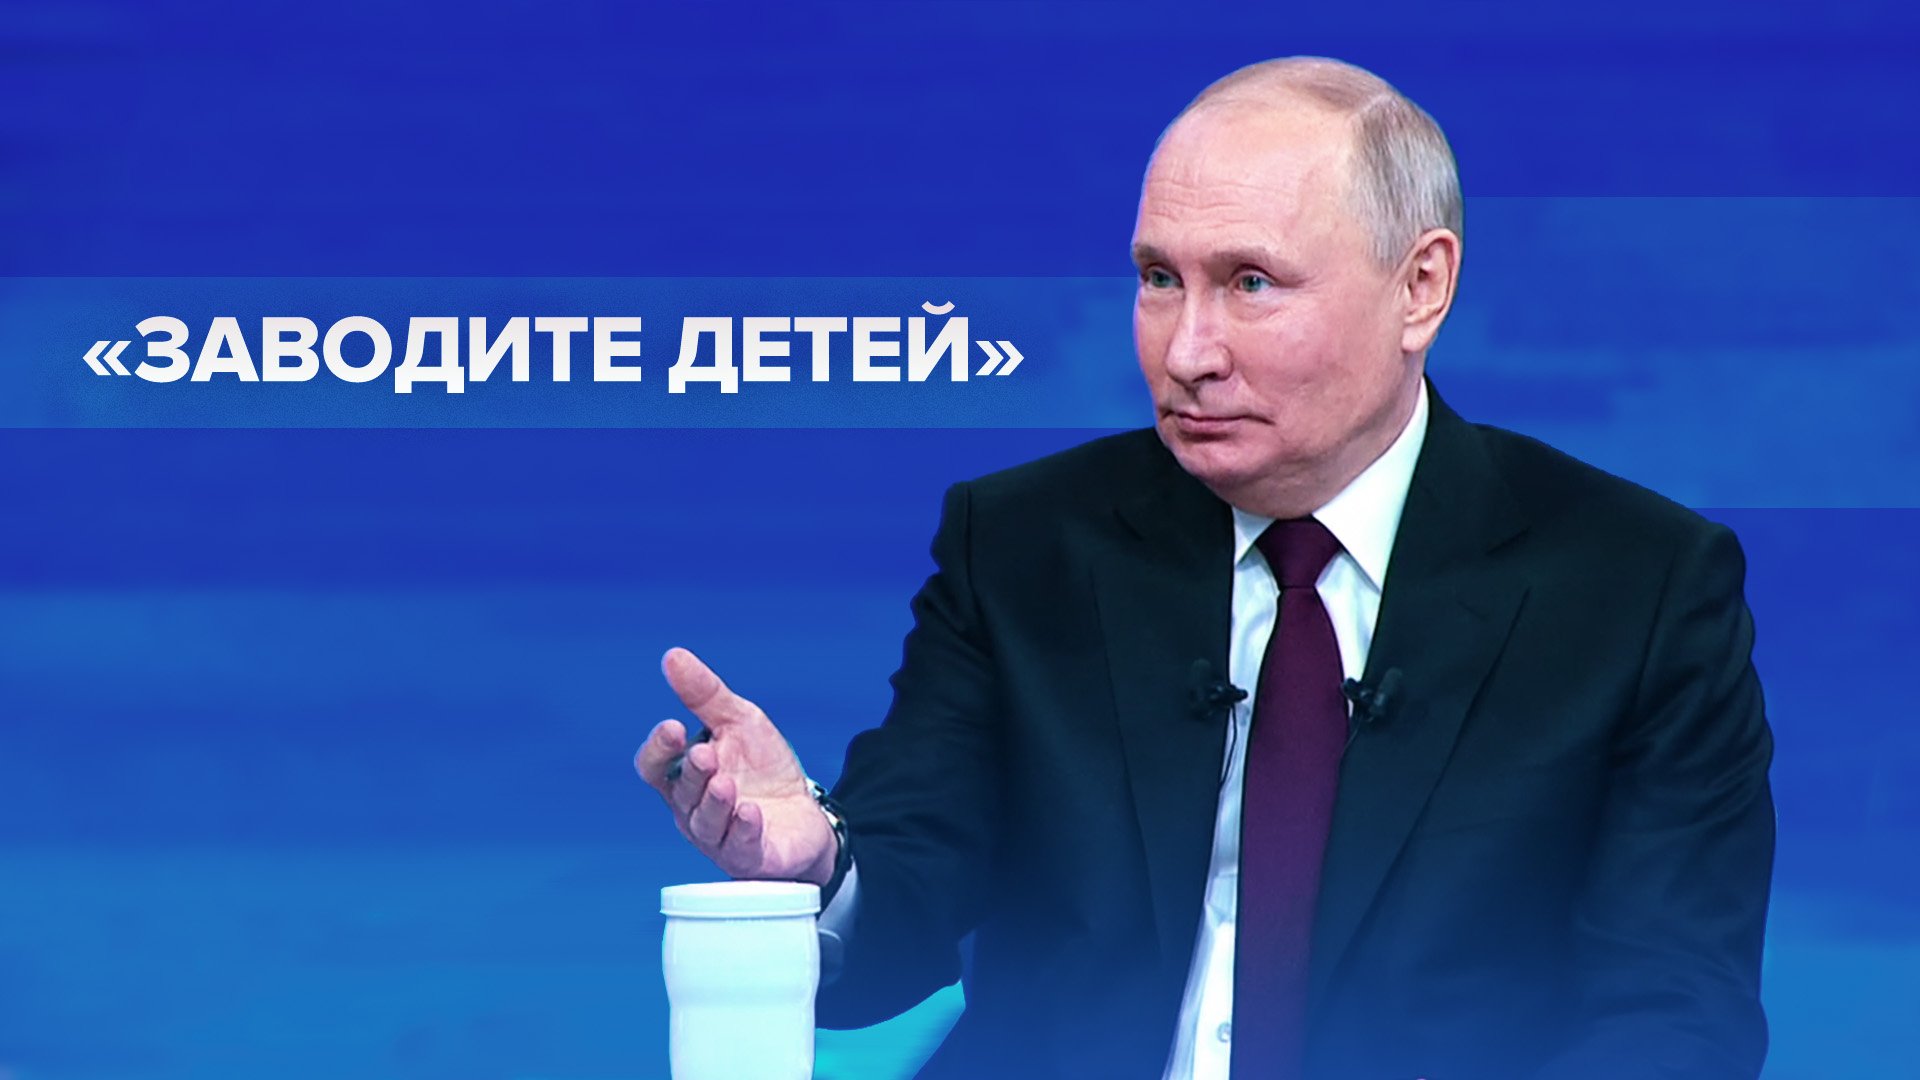 «Детей заводите»: совет Путина на вопрос журналиста о льготных тарифах на полёты